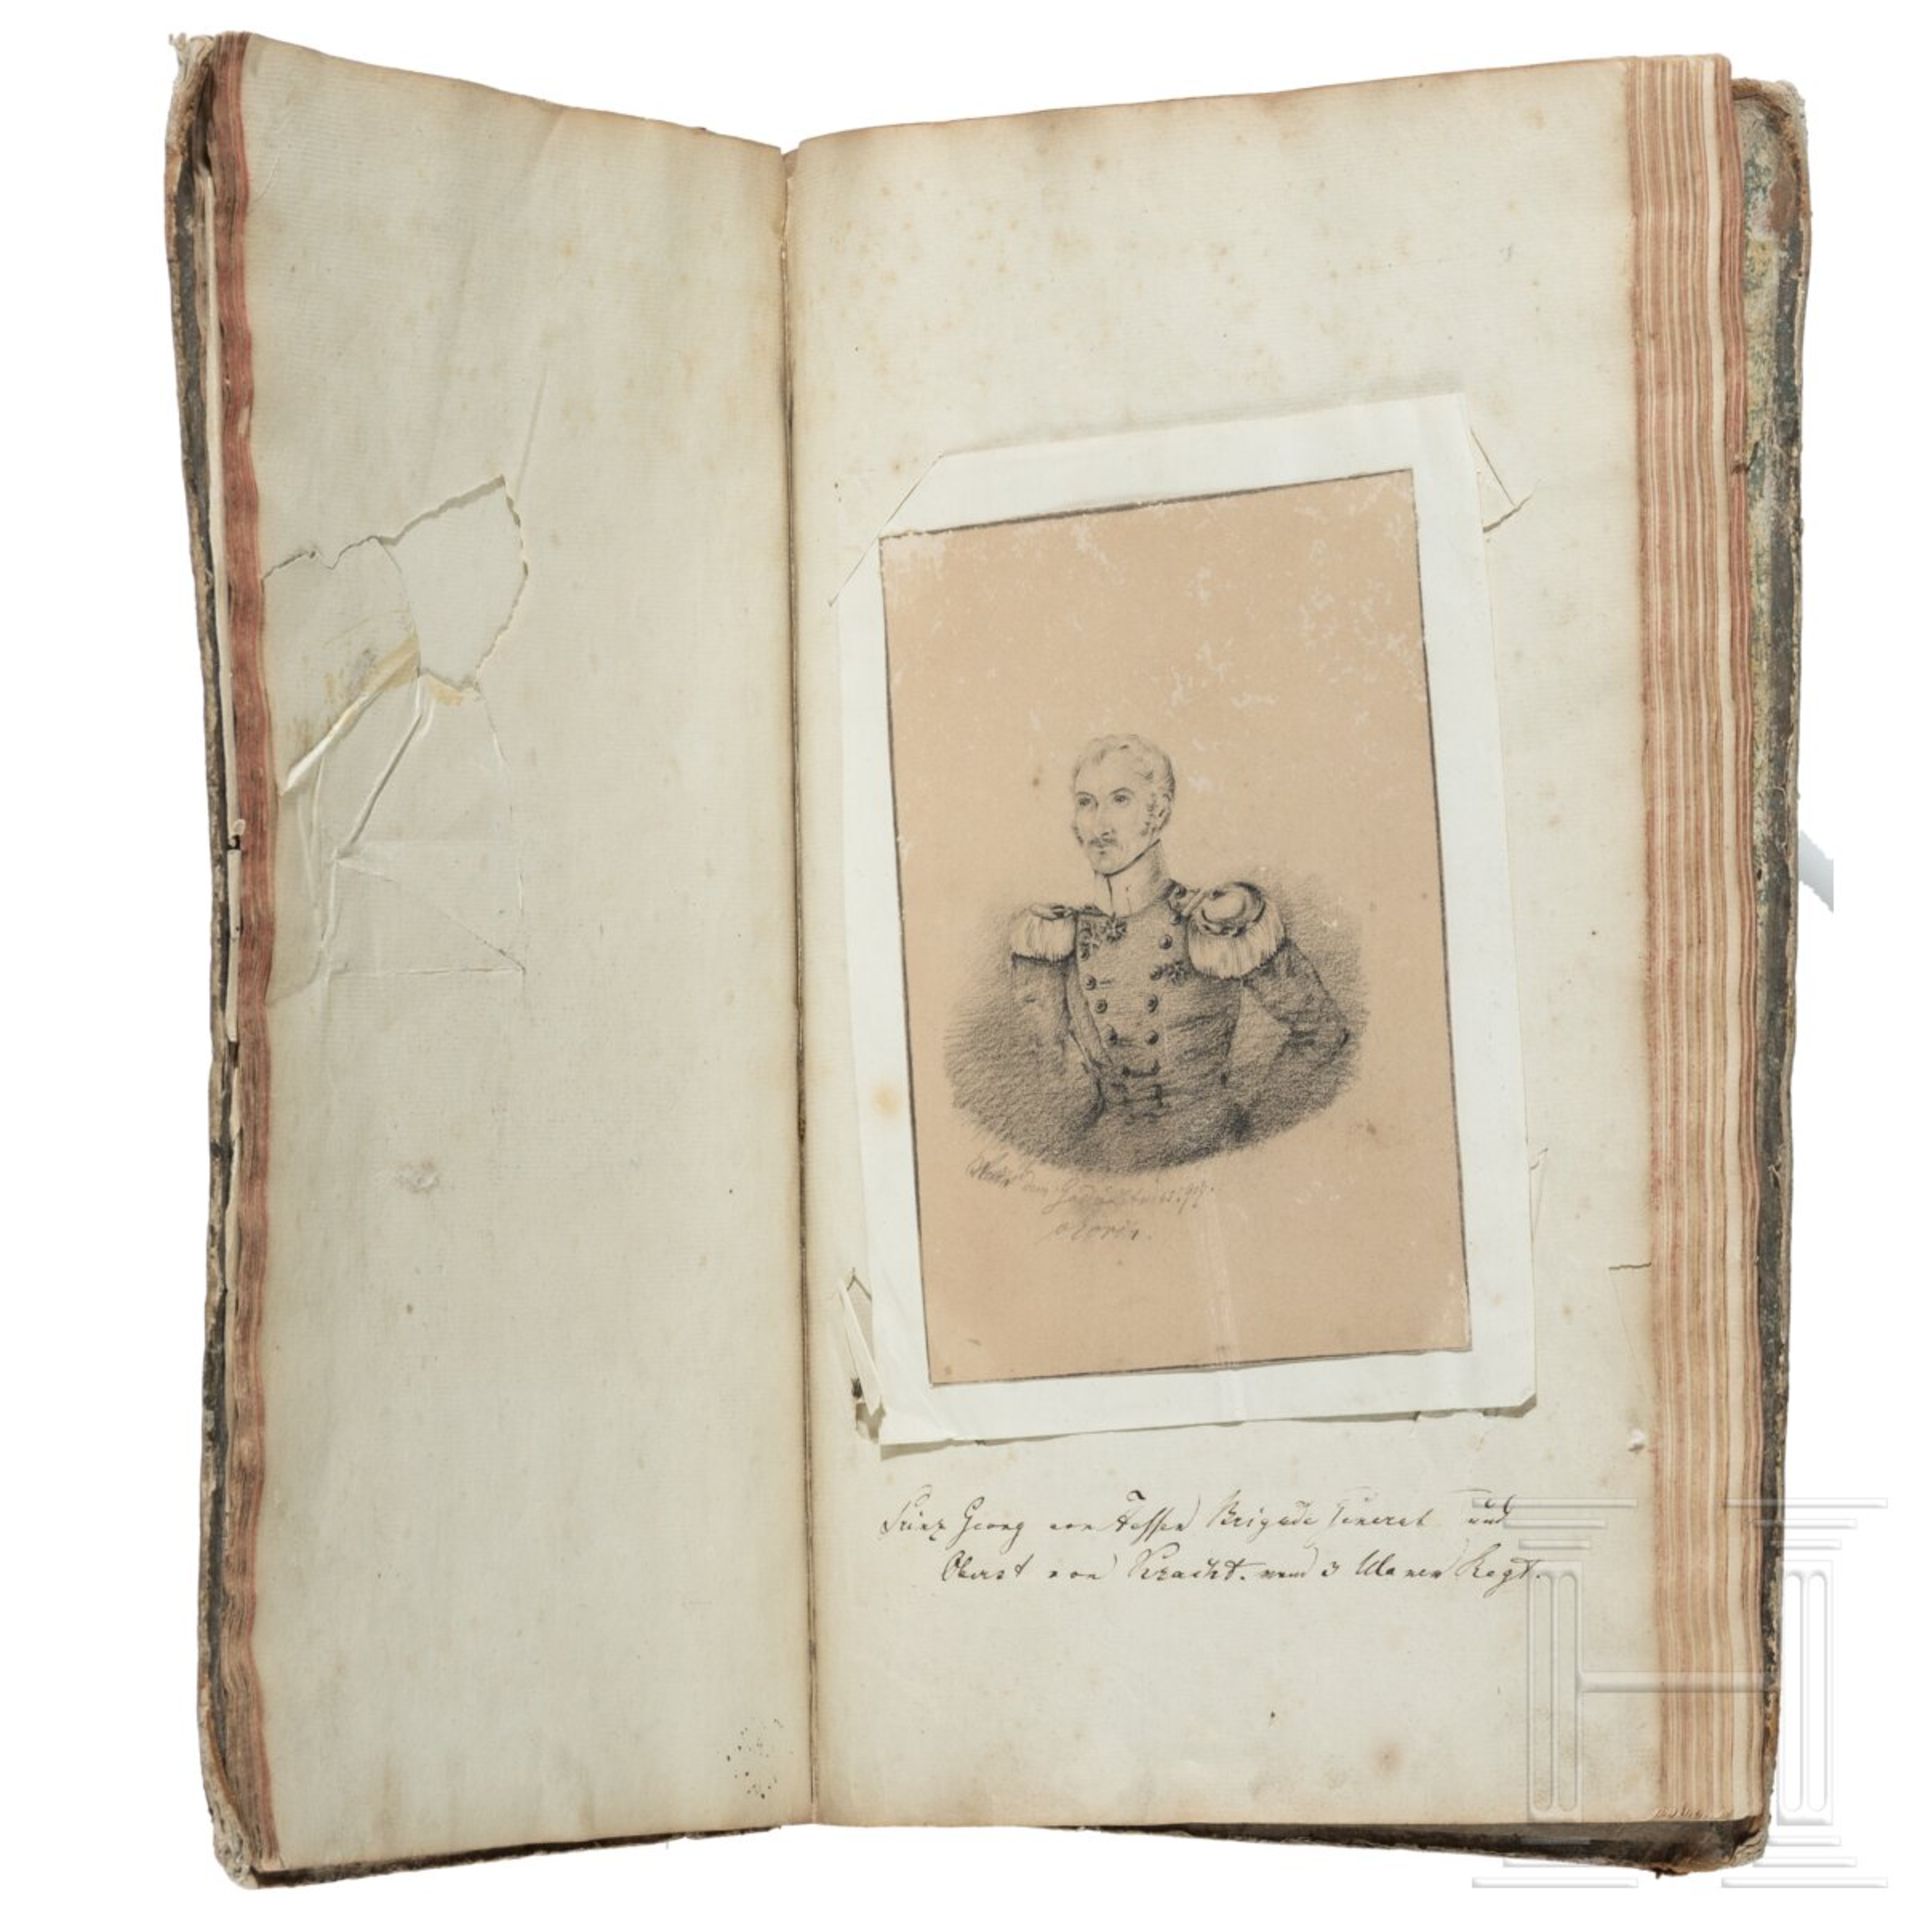 Album mit handgezeichneten Offiziersportraits, um 1830 - 1850 - Bild 7 aus 10